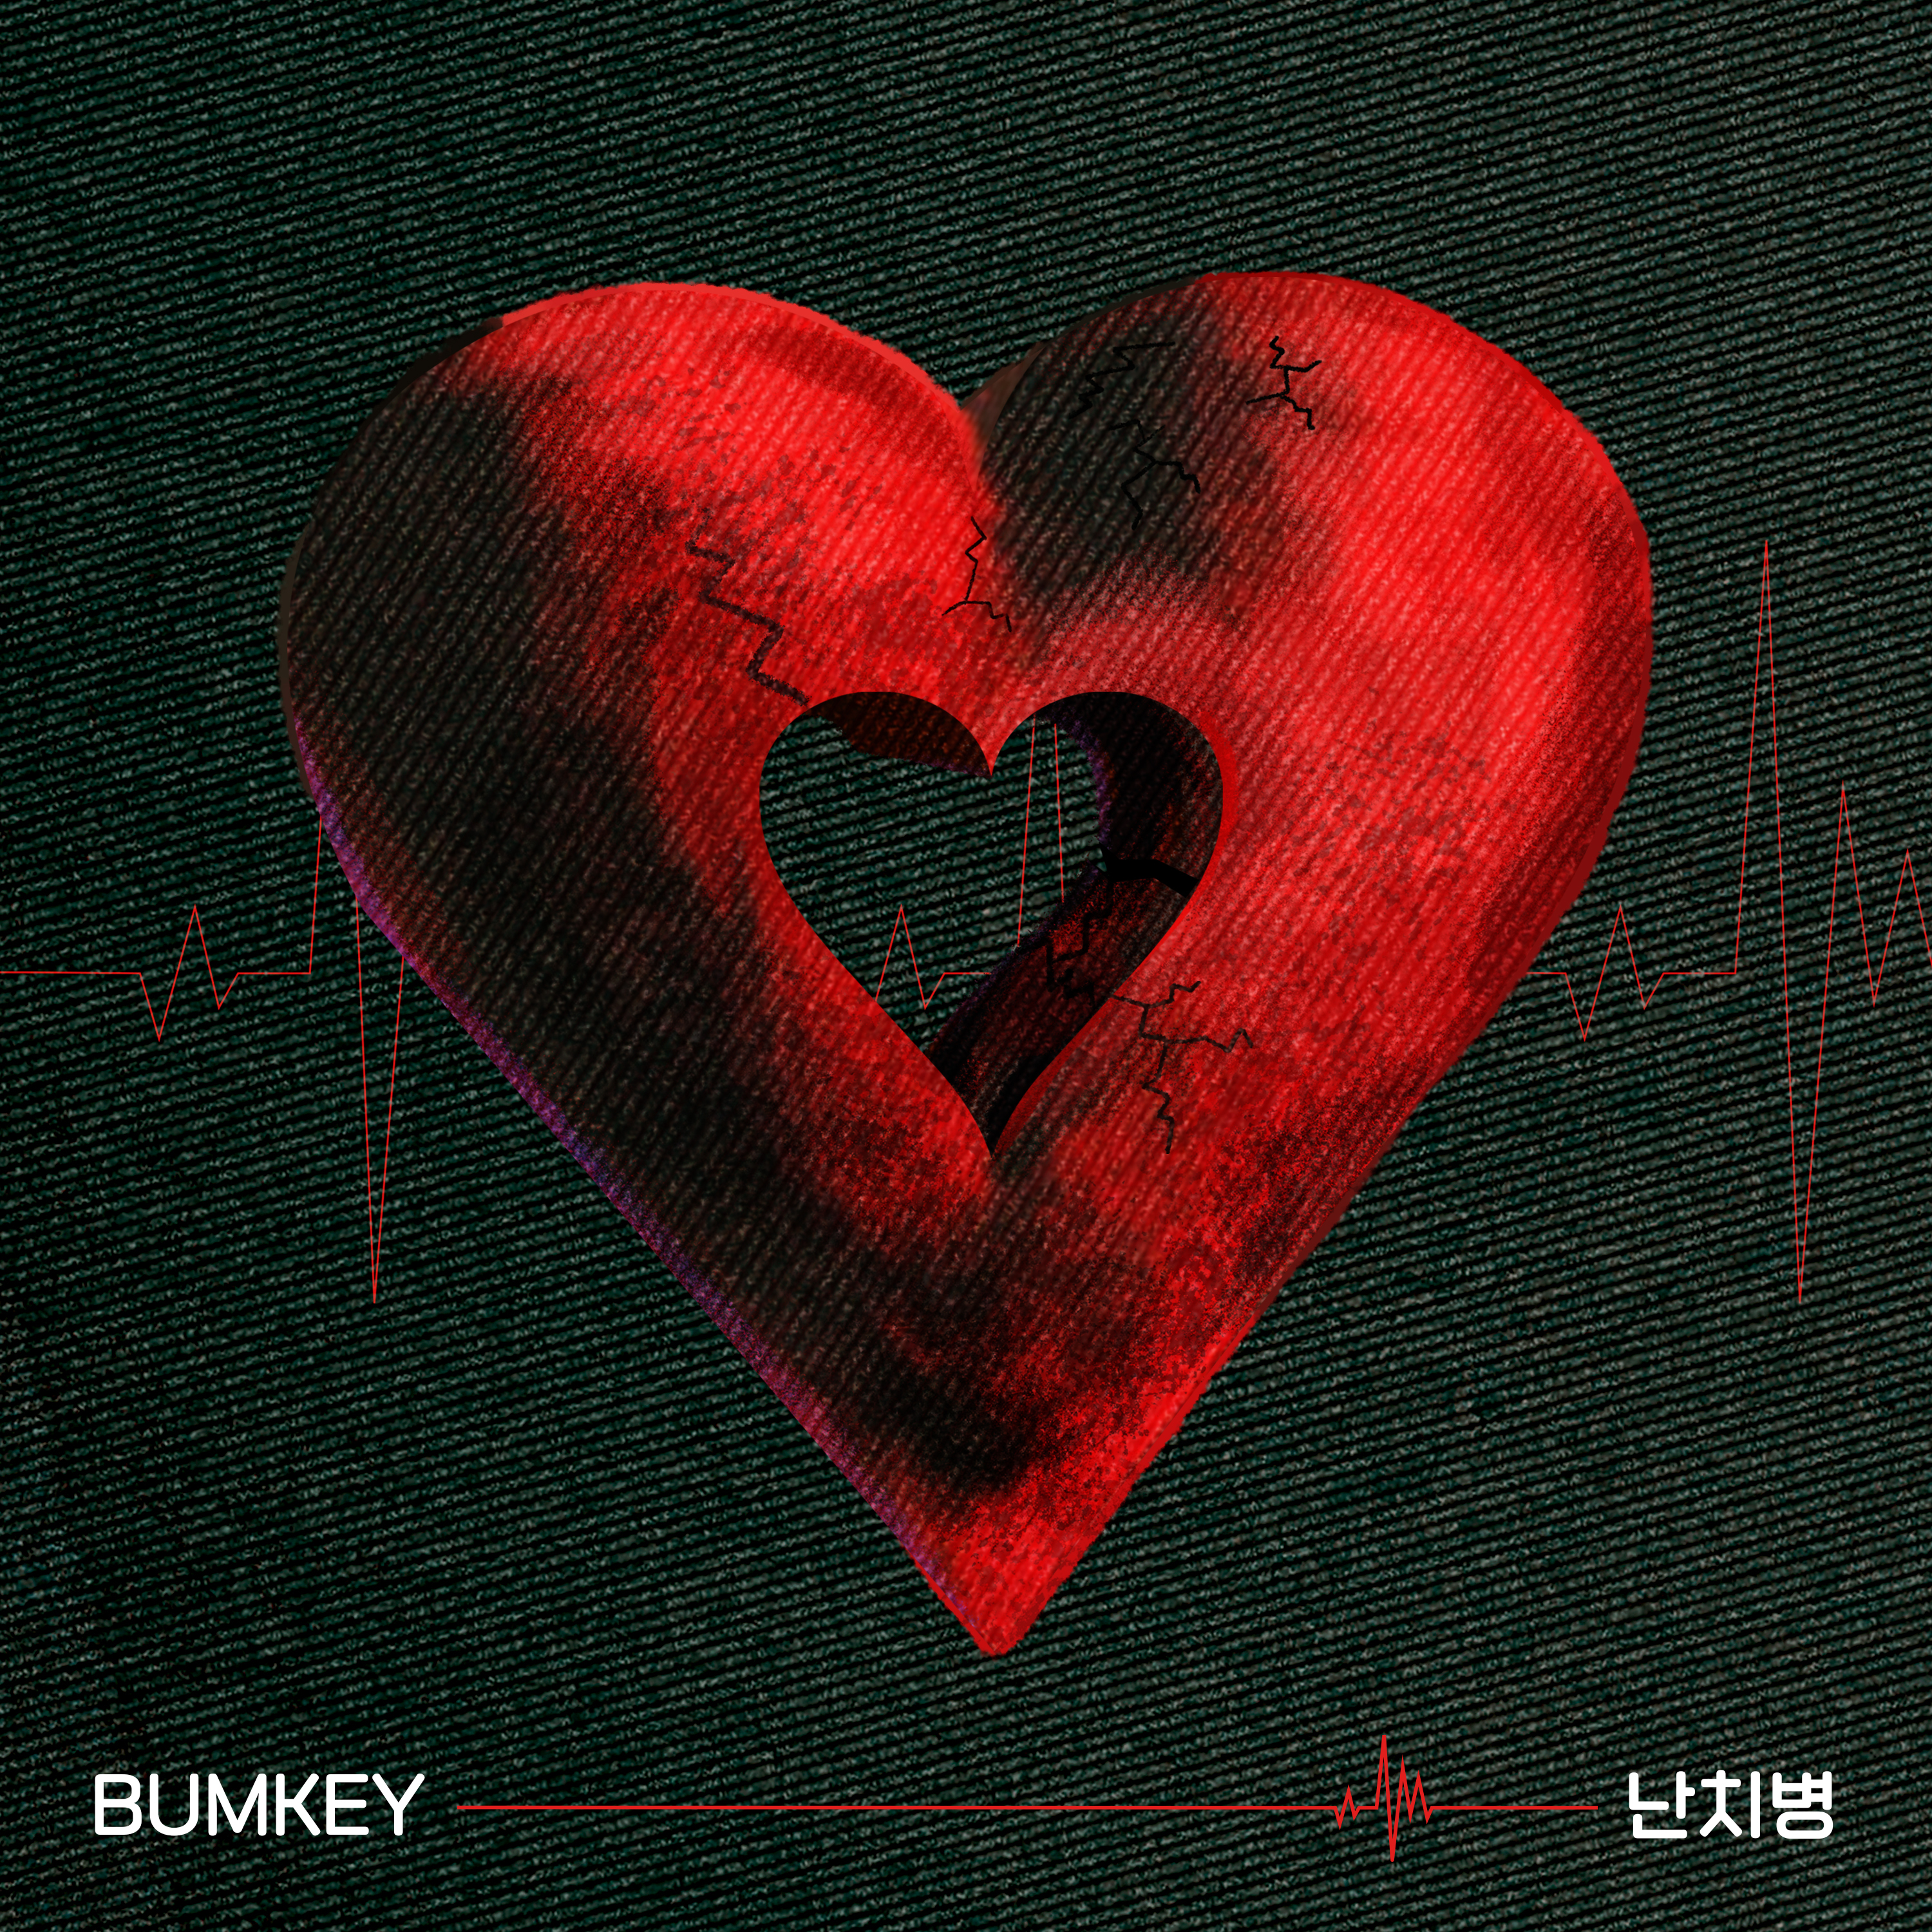 [情報] Bumkey - 不治之症